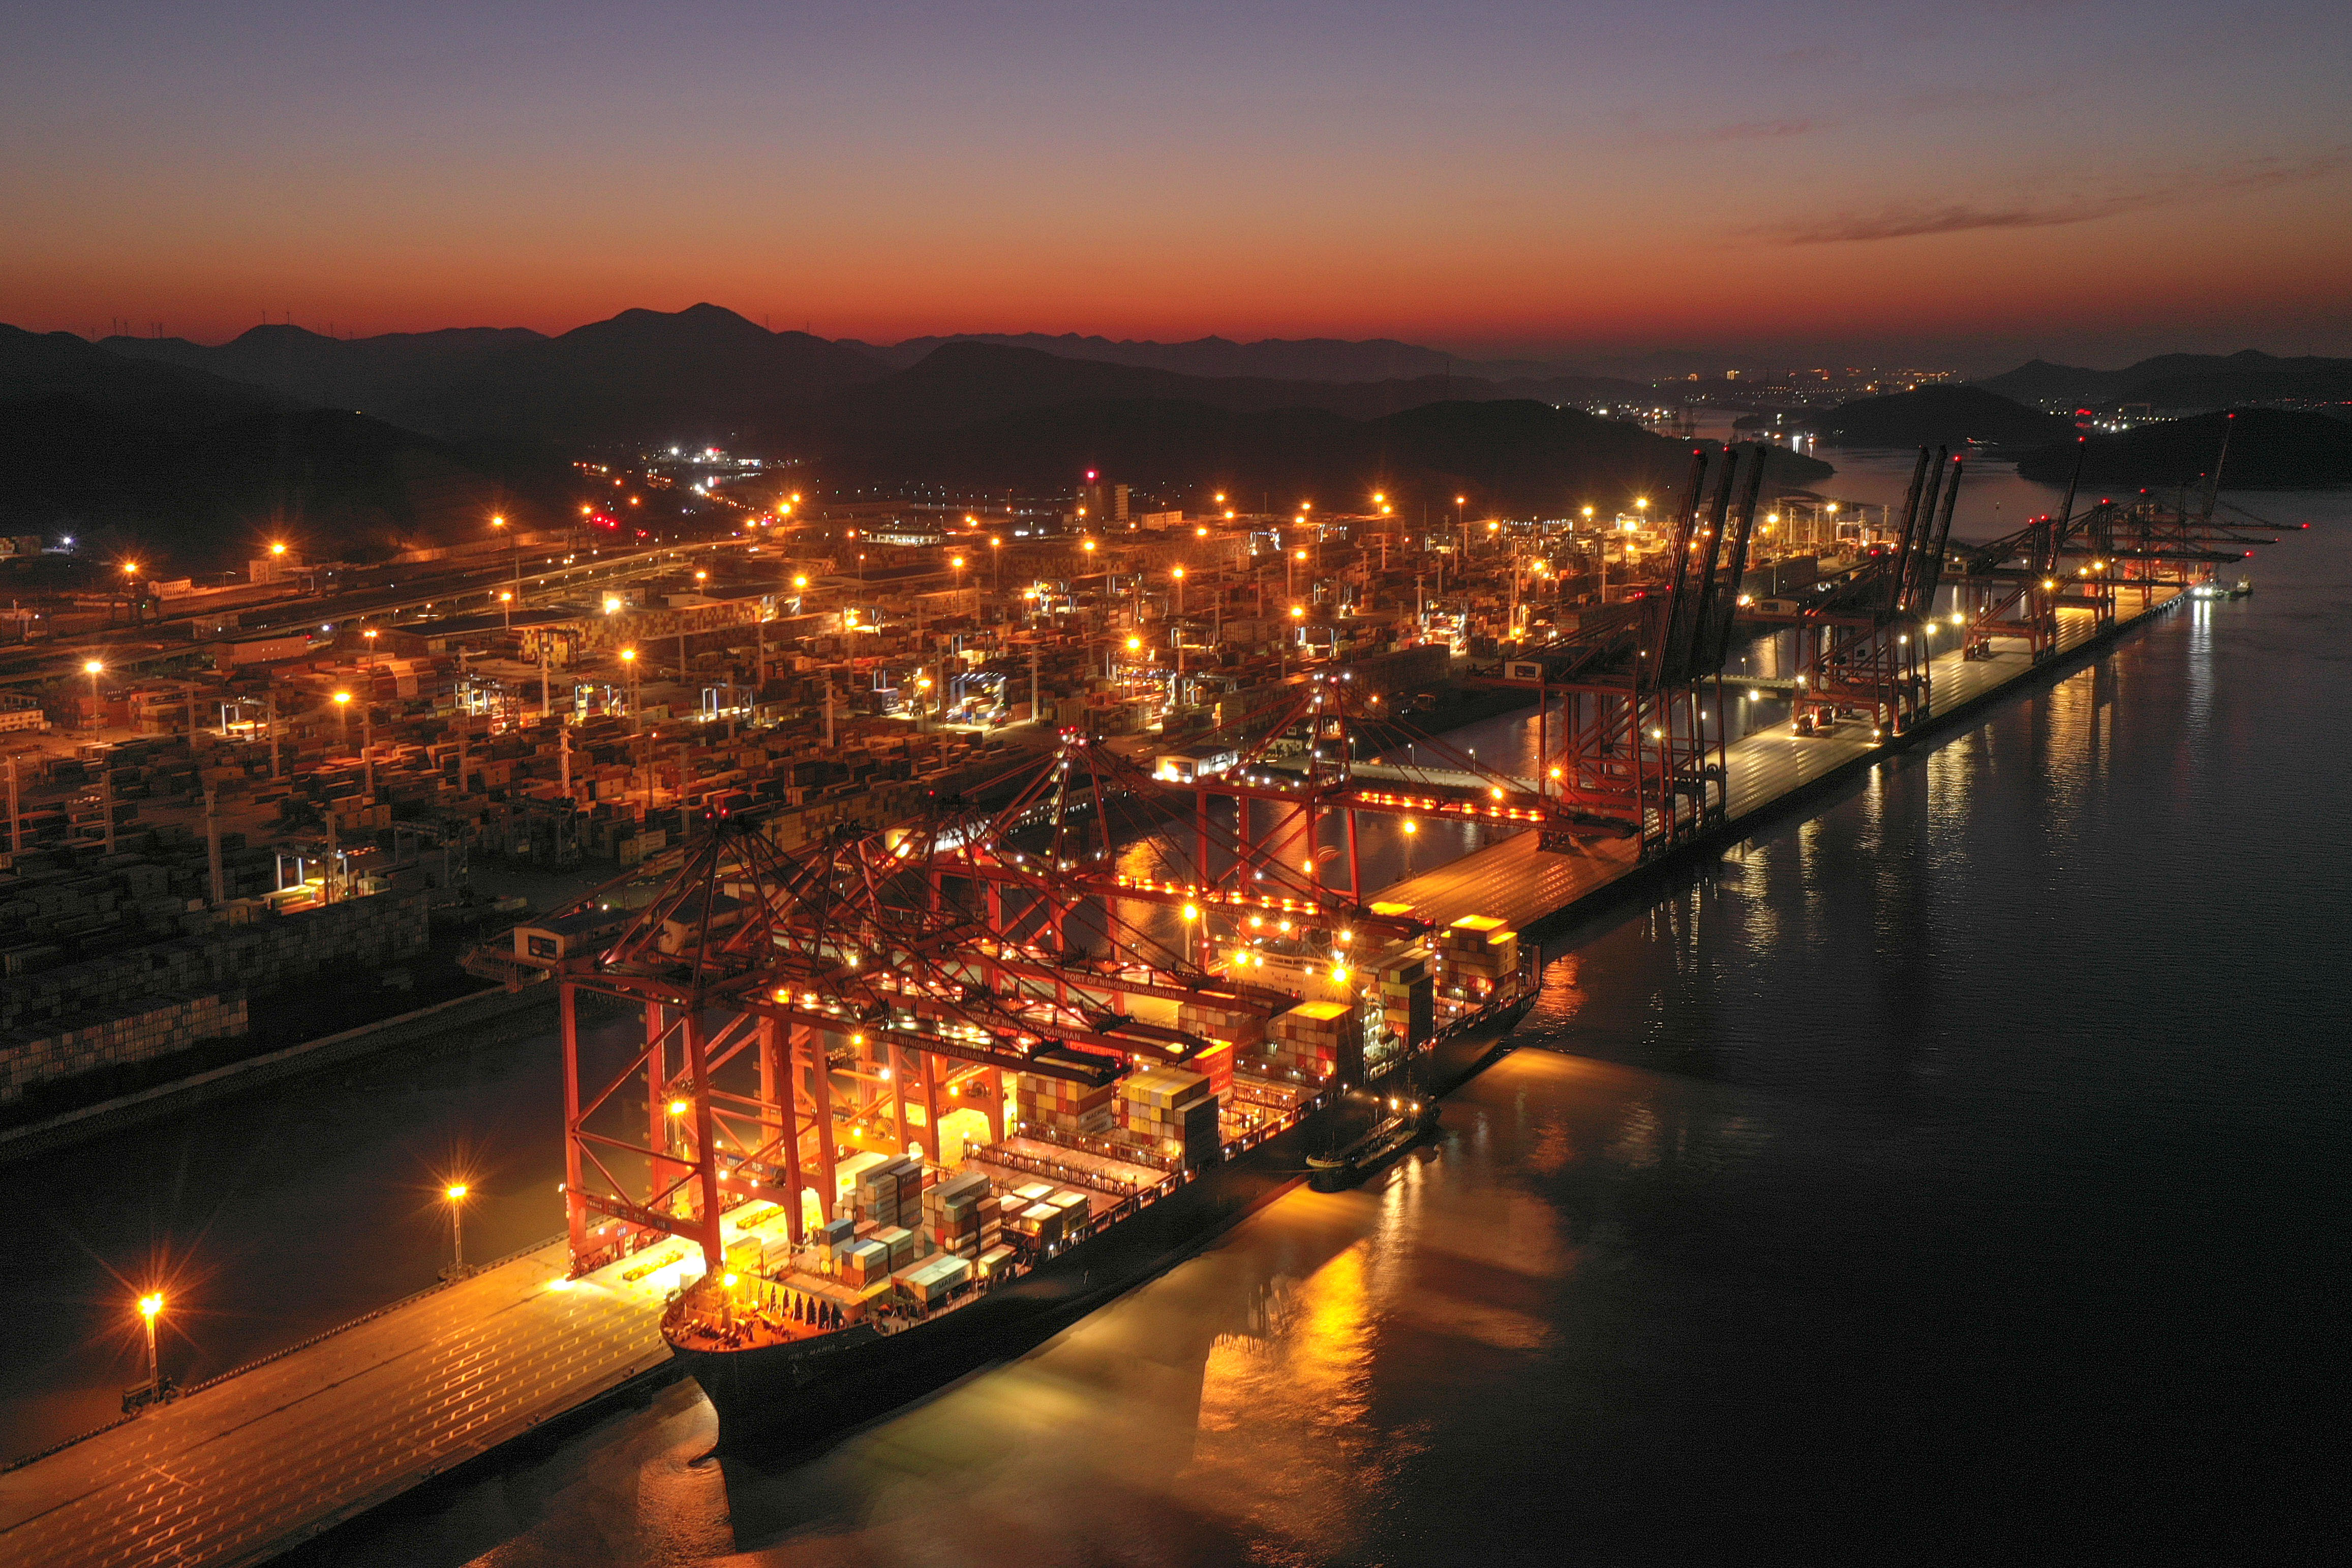 探访宁波舟山港:年货物吞吐量连续14年居全球第一